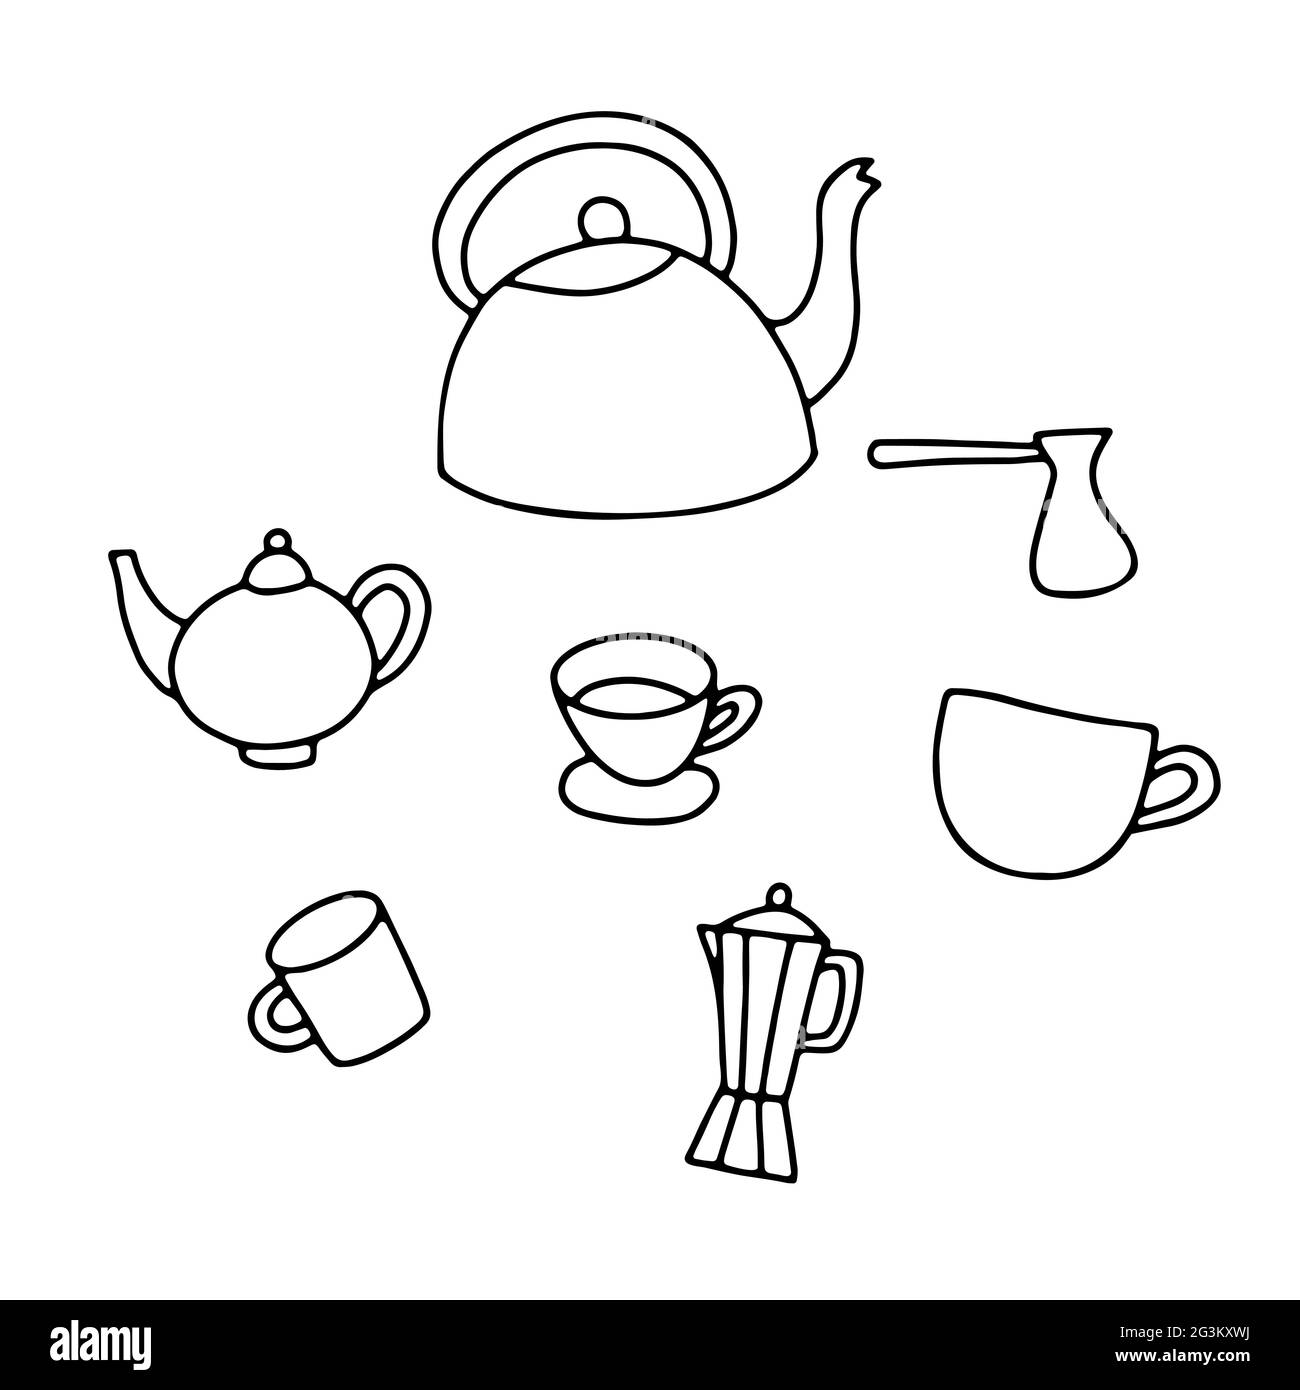 Handgezeichnete Teekannen-Set mit Doodle. Umriss Kessel, Tasse, Moka, turka auf weißem Hintergrund. Gemütliche Küchenutensilien, Küchenutensilien, Geschirr für Tee, Kaffee, Getränke Stock Vektor